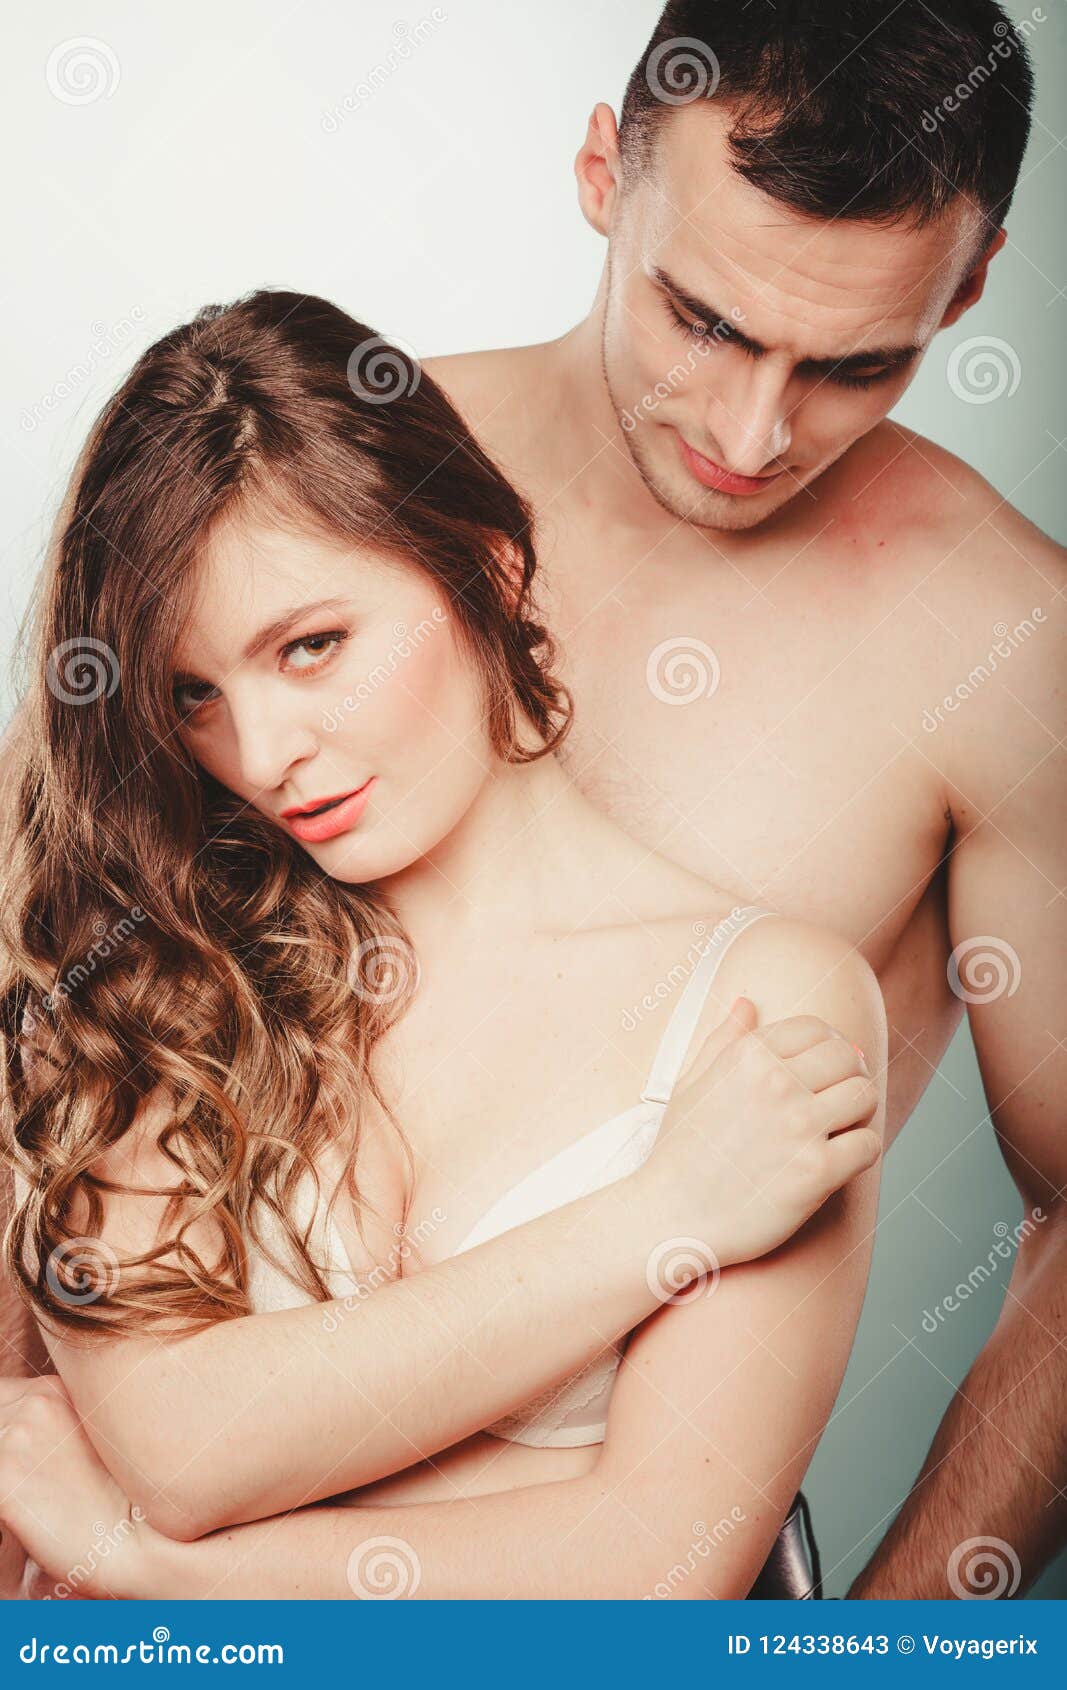 Pretty nude couples pics